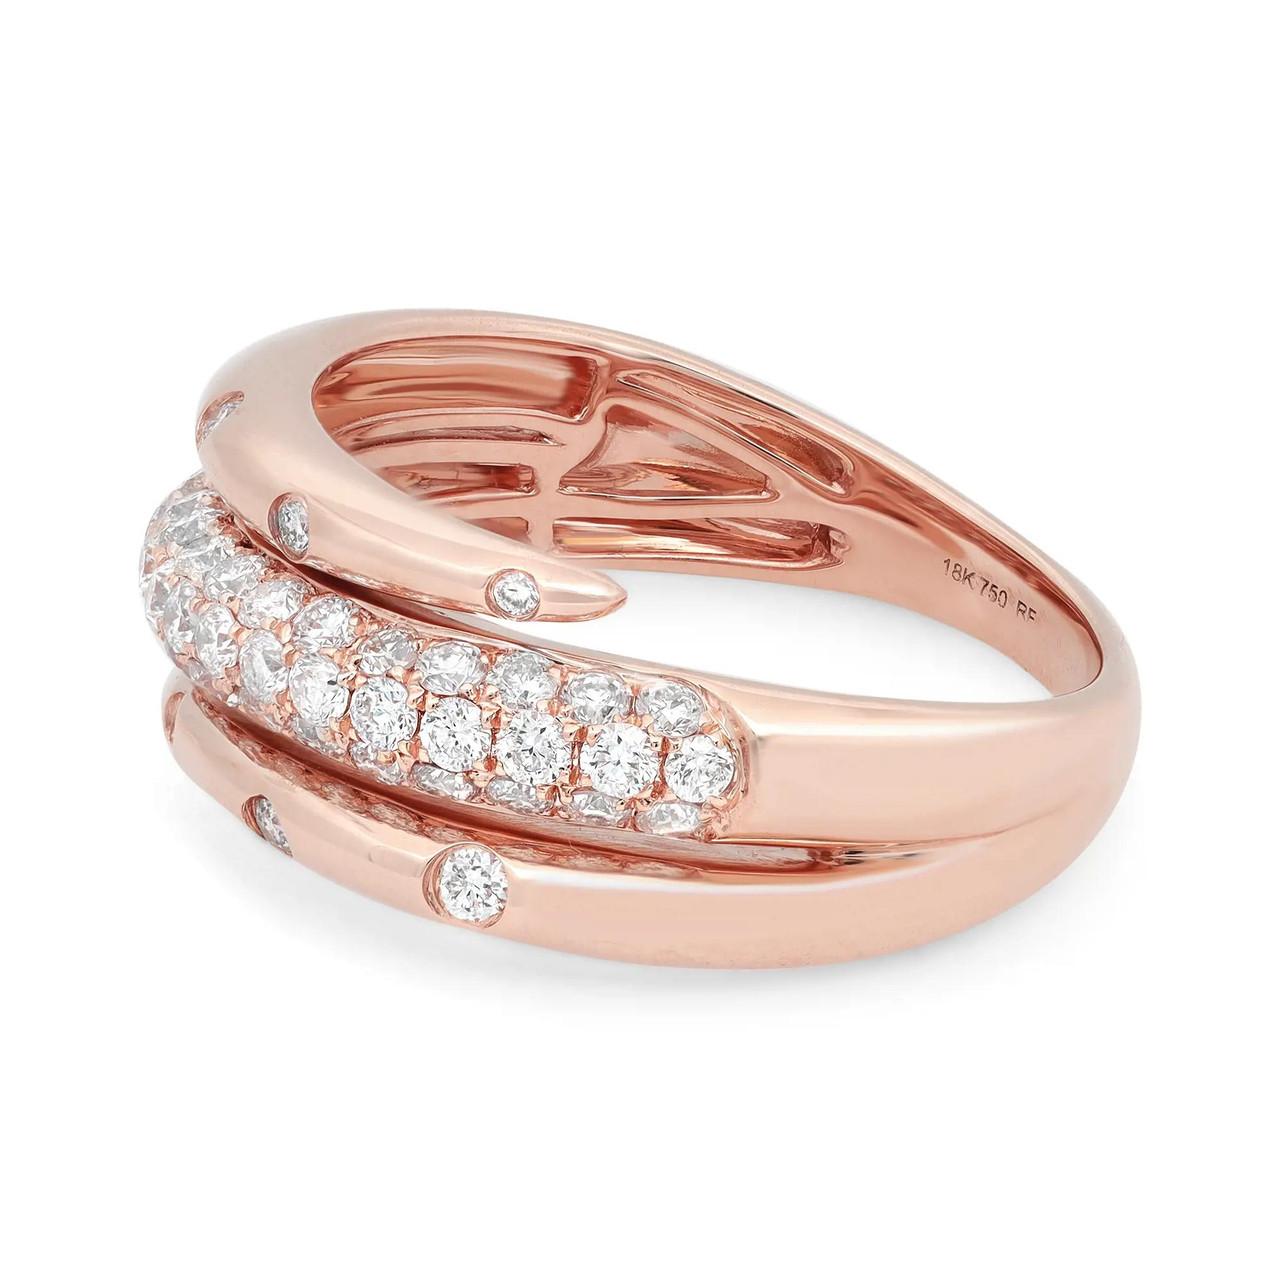 Wir präsentieren unseren atemberaubenden 0,77-Karat-Diamant-Spiralring in 18 Karat Roségold. Dieser mit viel Liebe zum Detail gefertigte Spiralring stellt die perfekte Balance zwischen Eleganz und Modernität dar. Die Fassung aus 18-karätigem